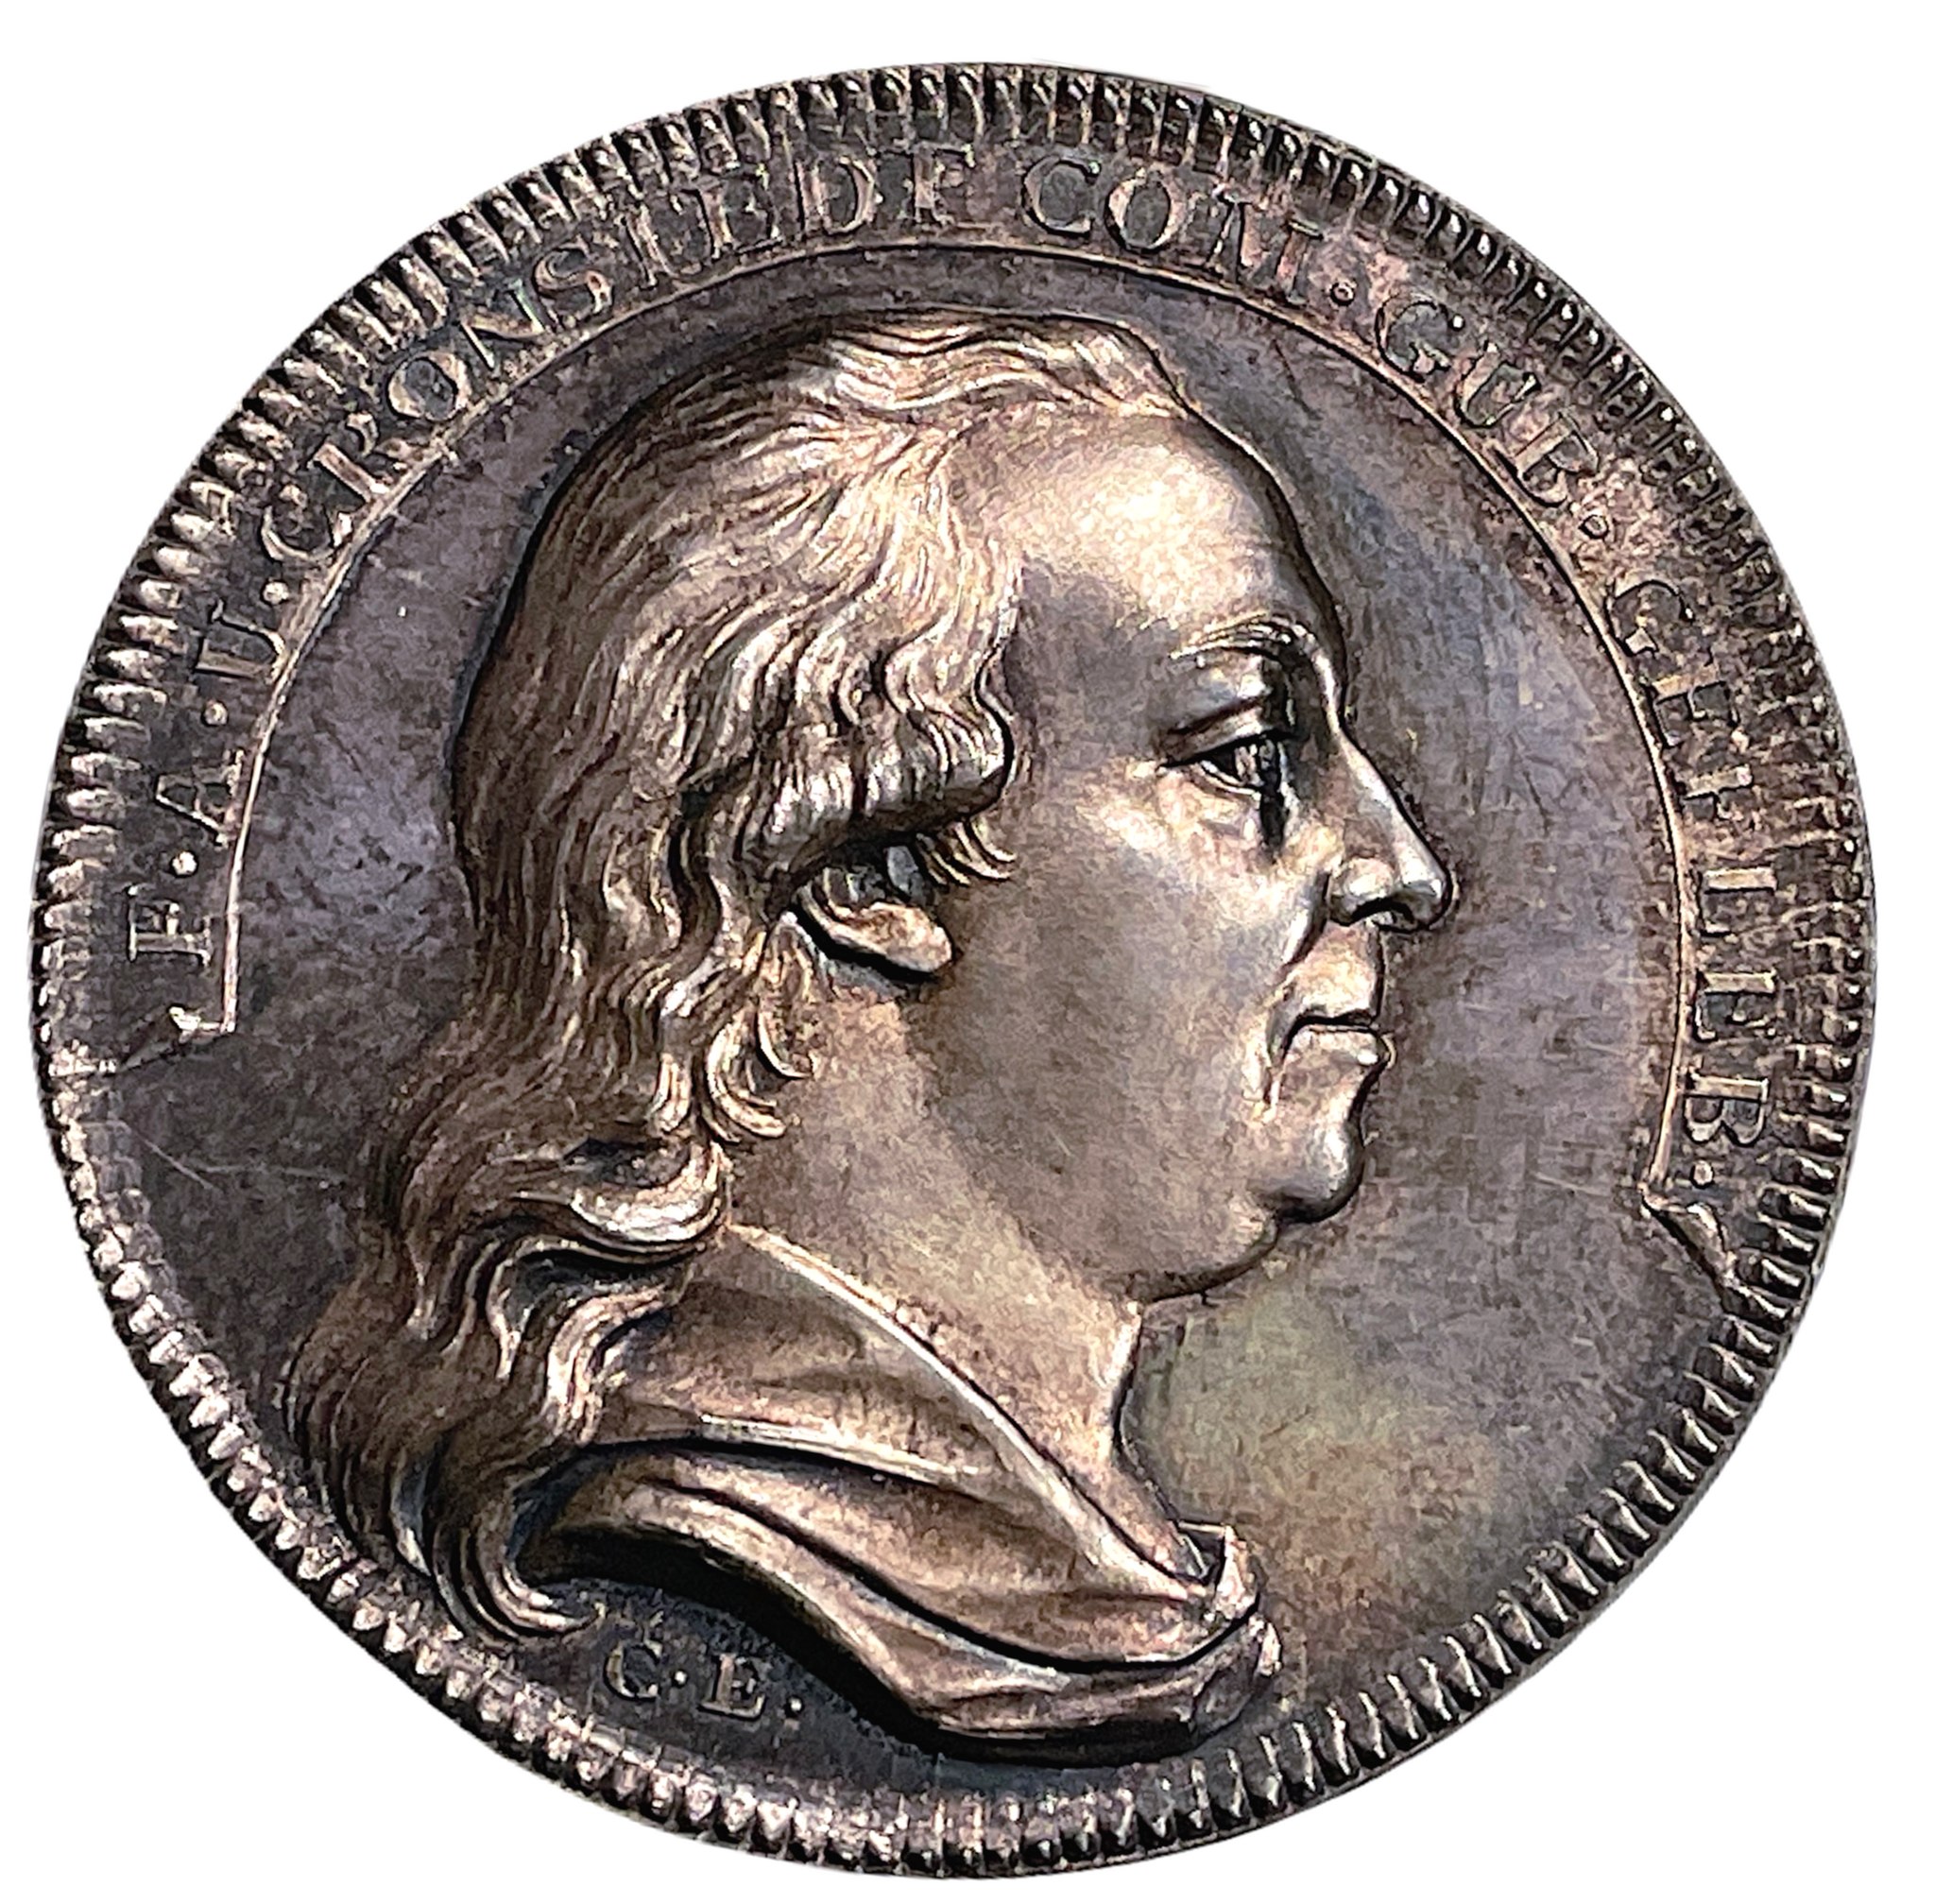 Fredrik Adolf Ulrik Cronstedt (1744-1829) av Carl Enhörning 1808 - Konstnär och landshövding i Gävleborgs län